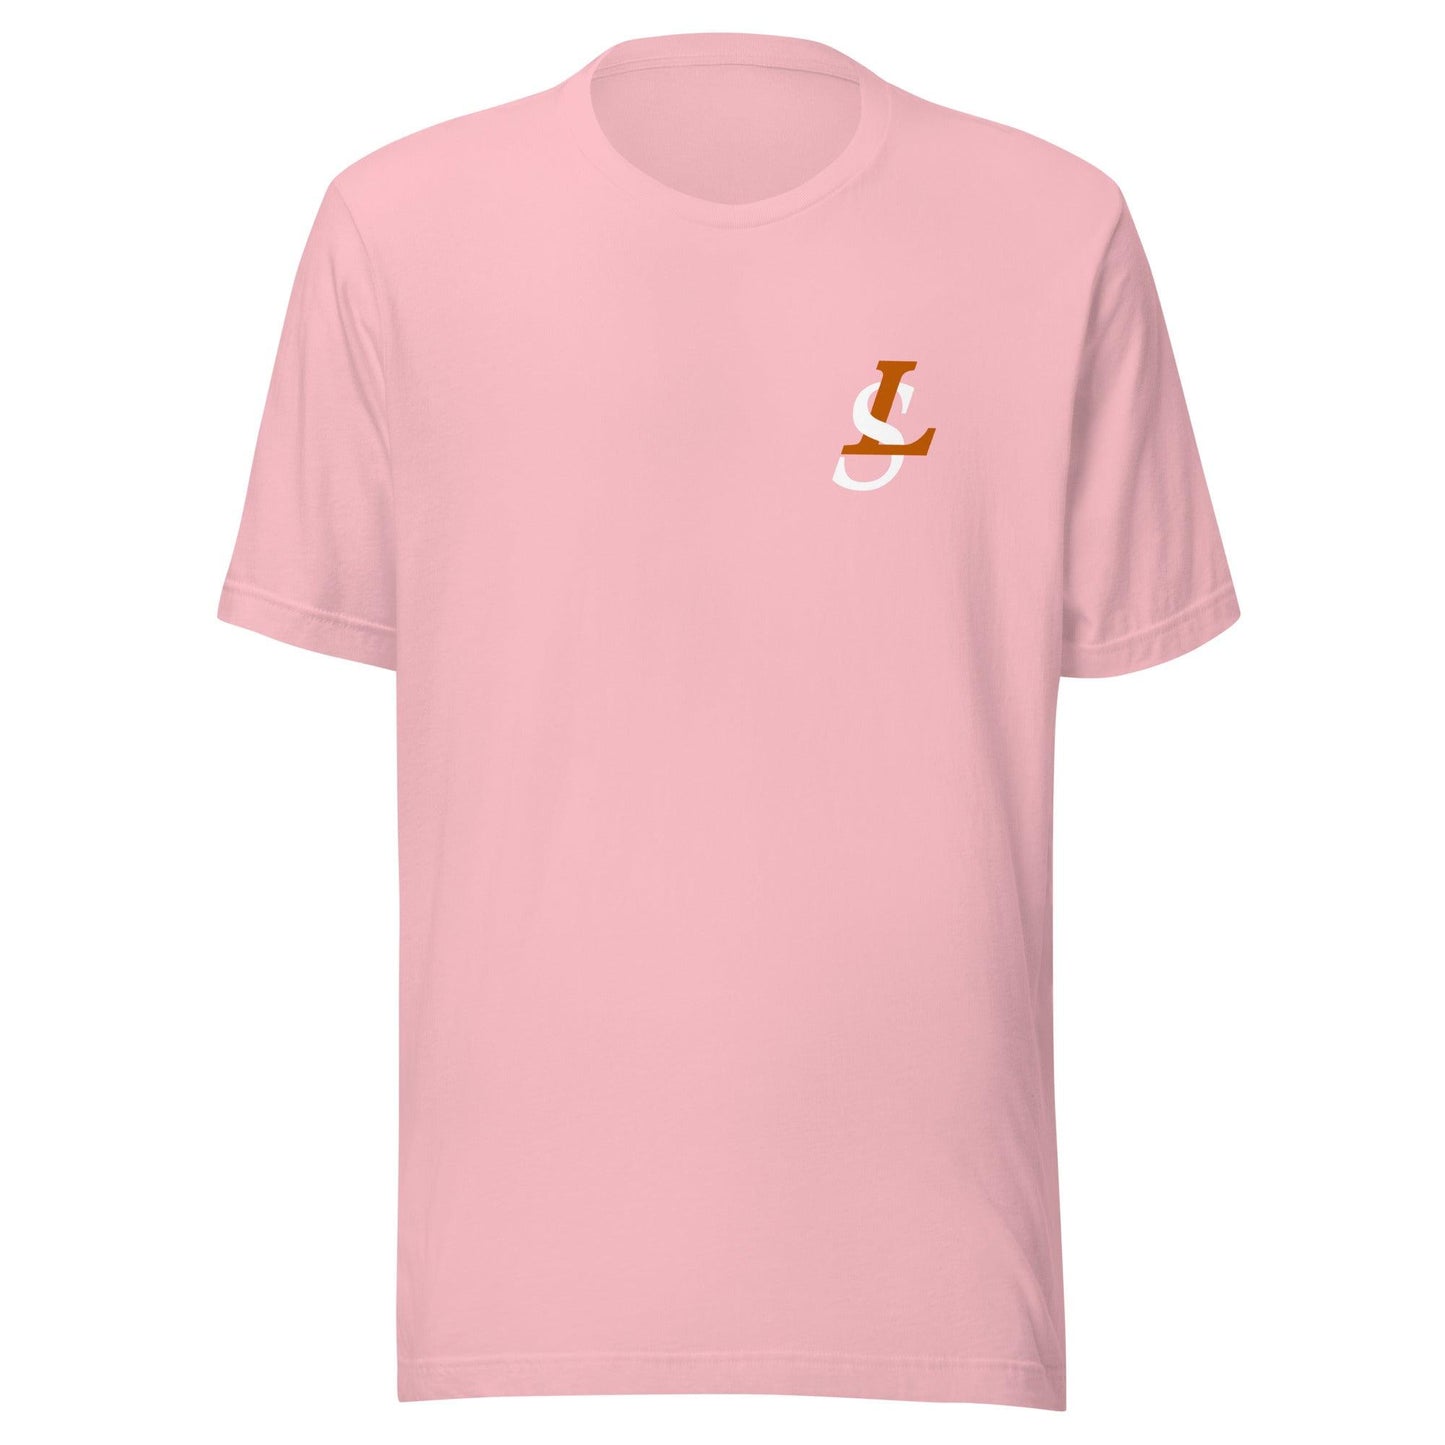 Lance St. Louis "Signature" t-shirt - Fan Arch